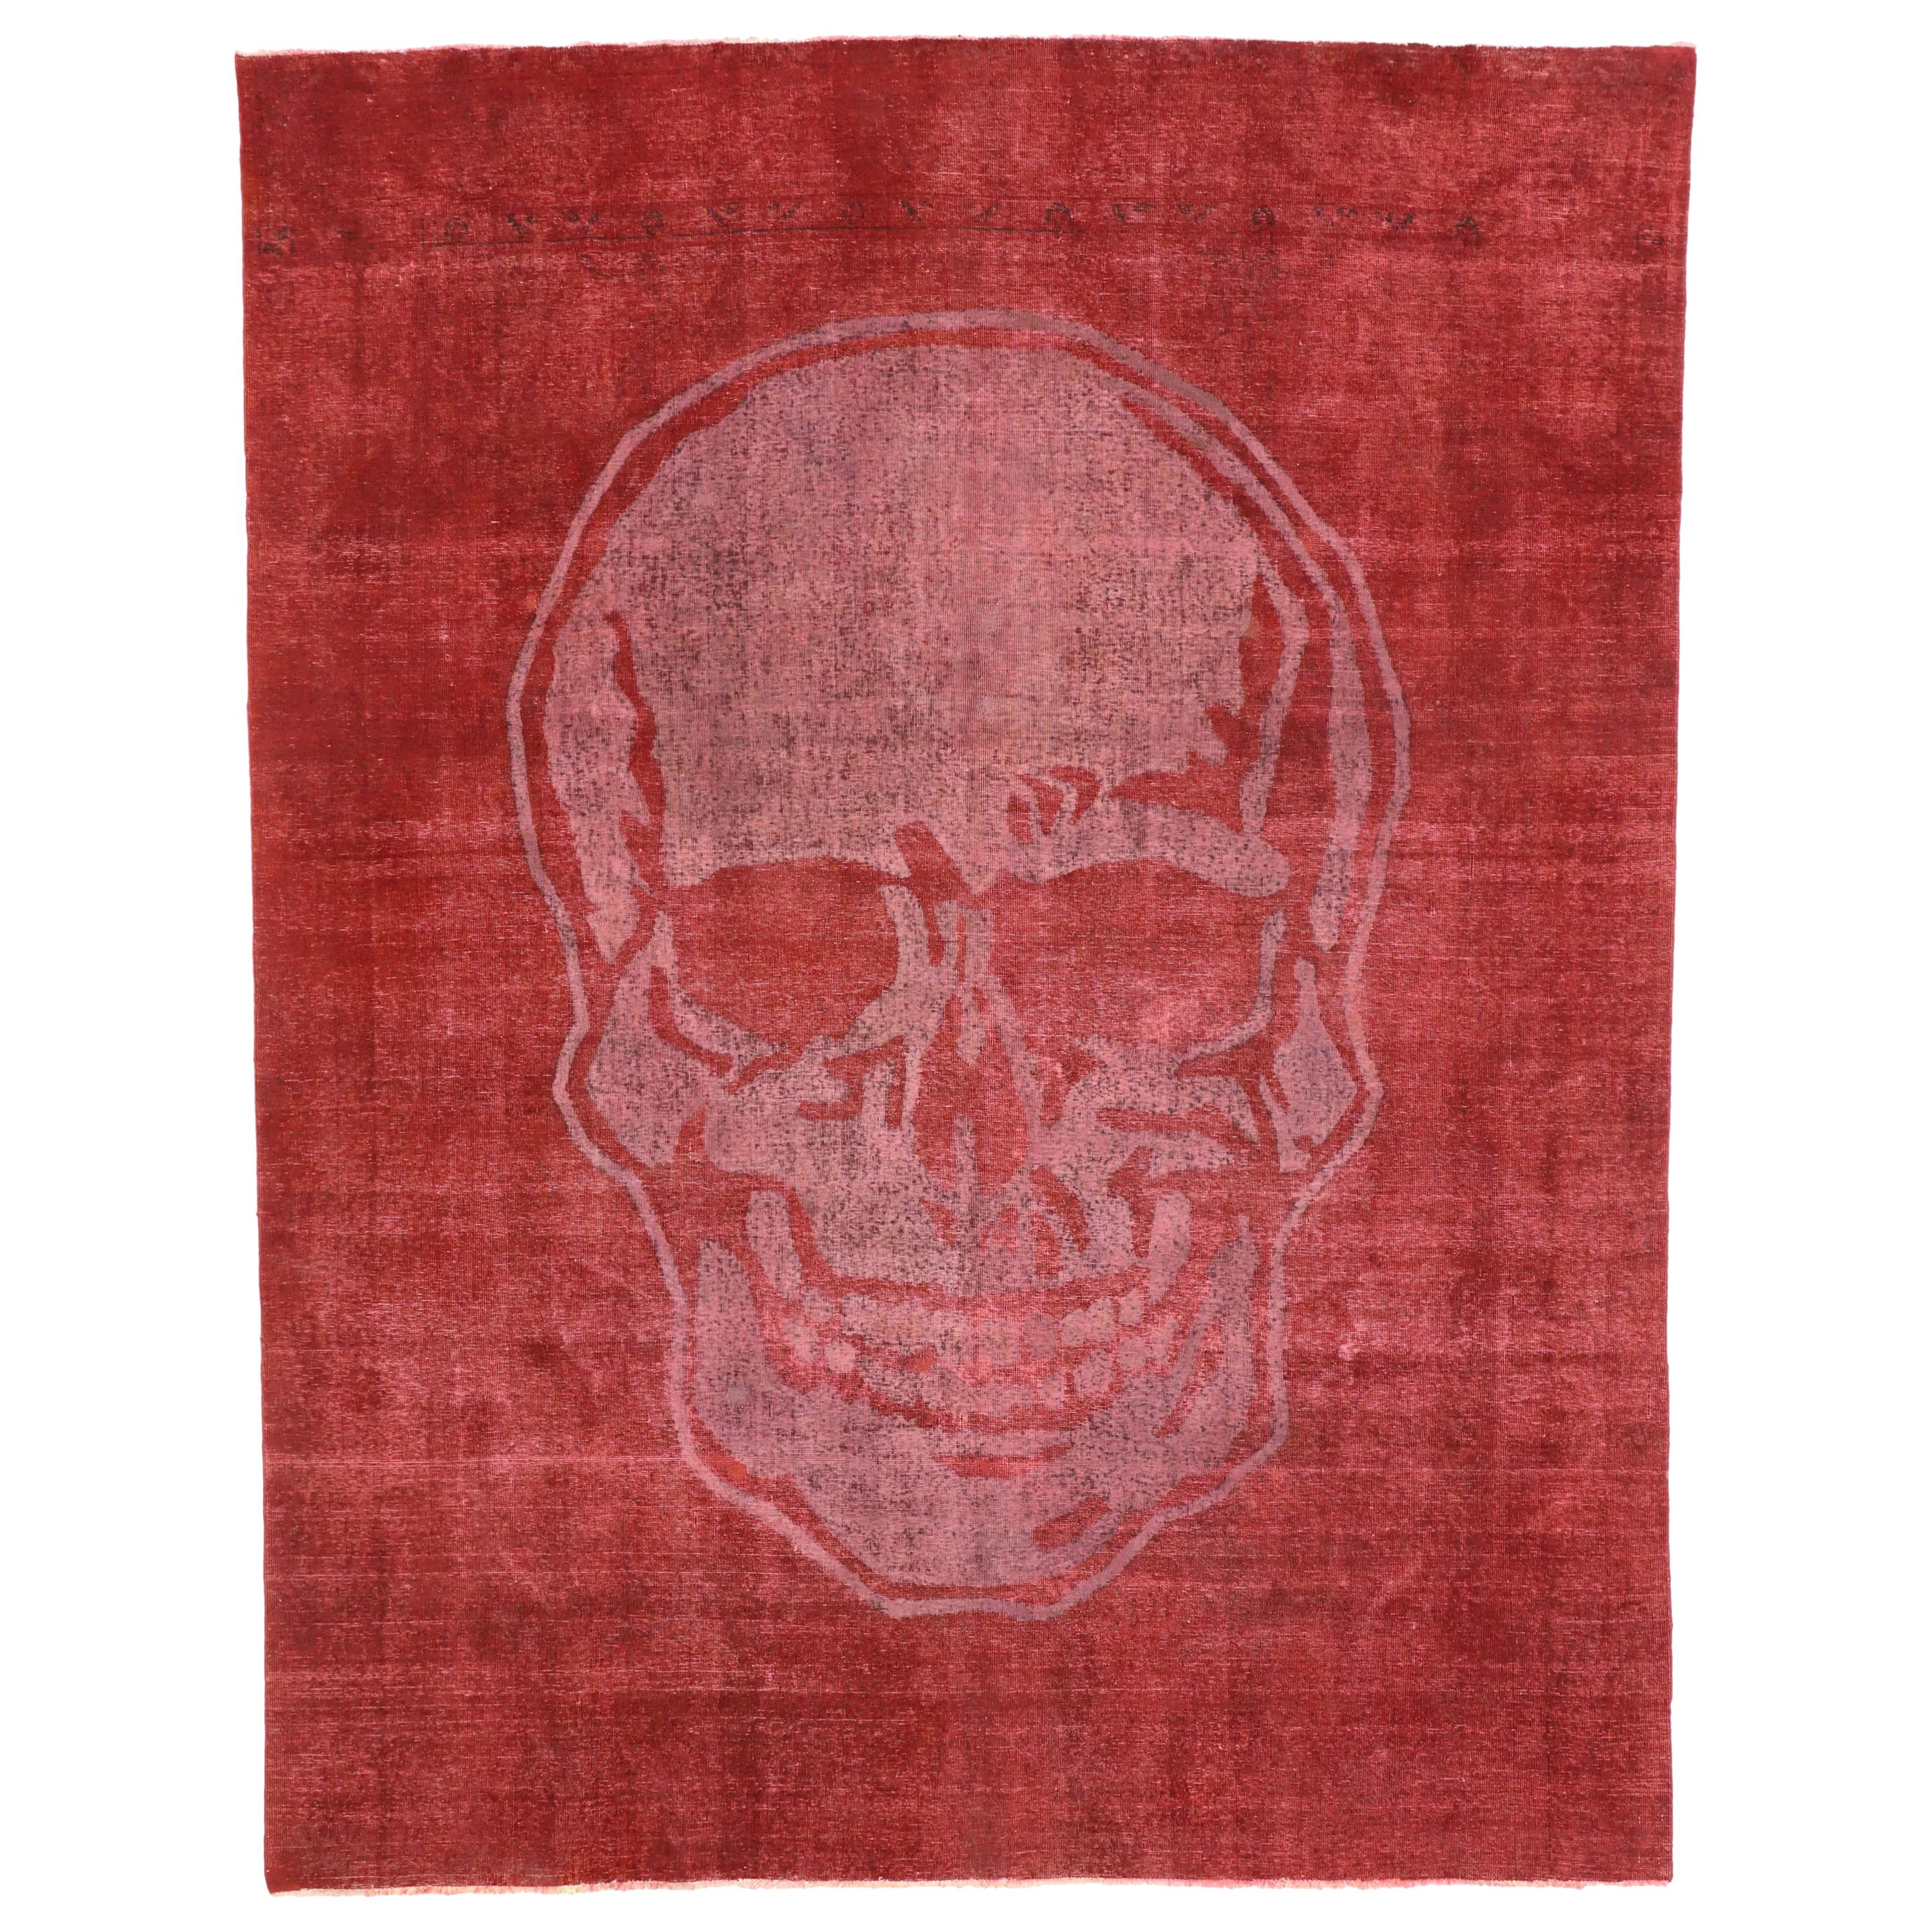 Vintage-Teppich mit rotem Schädel im Used-Stil von Alexander McQueen, inspiriert von Craniotomy im Angebot